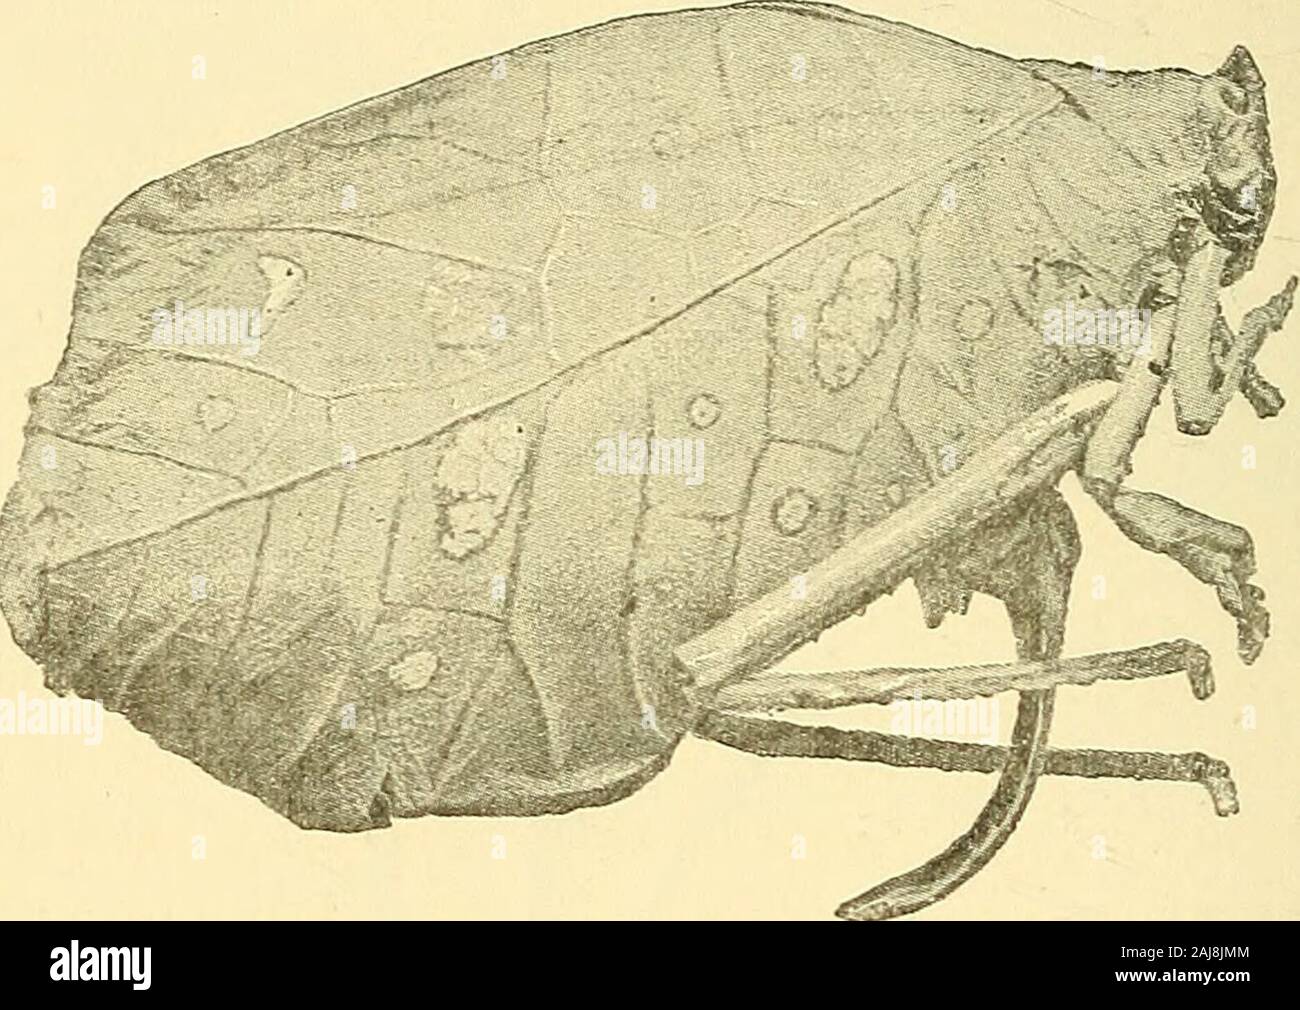 Das tierische Leben und Intelligenz. Abb. 18.- Caterpillar einer Motte (Ennomos tiliaria) auf einer Eiche-Spray. (Froman Ausstellung des British Natural History Museum.) Das Blatt - Insekt vertraut sind Abbildungen, obwohl keine onewho hat sie in der Natur nicht gesehen kann das Ausmaß der Ähnlichkeit zu realisieren. Die meisten von uns haben jedenfalls gesehen thestick - Raupen oder loopers (Abb. 18), obwohl, vielleicht Paar 86 tierische Leben und Intelligenz. bemerkt haben, wie wundervoll ist der schützende resemblanceto ein Zweig, wenn die Larve ist still und regungslos, für Thevery Grund, dass die Ähnlichkeit so gekennzeichnet ist, dass theorganism am Th Stockfoto